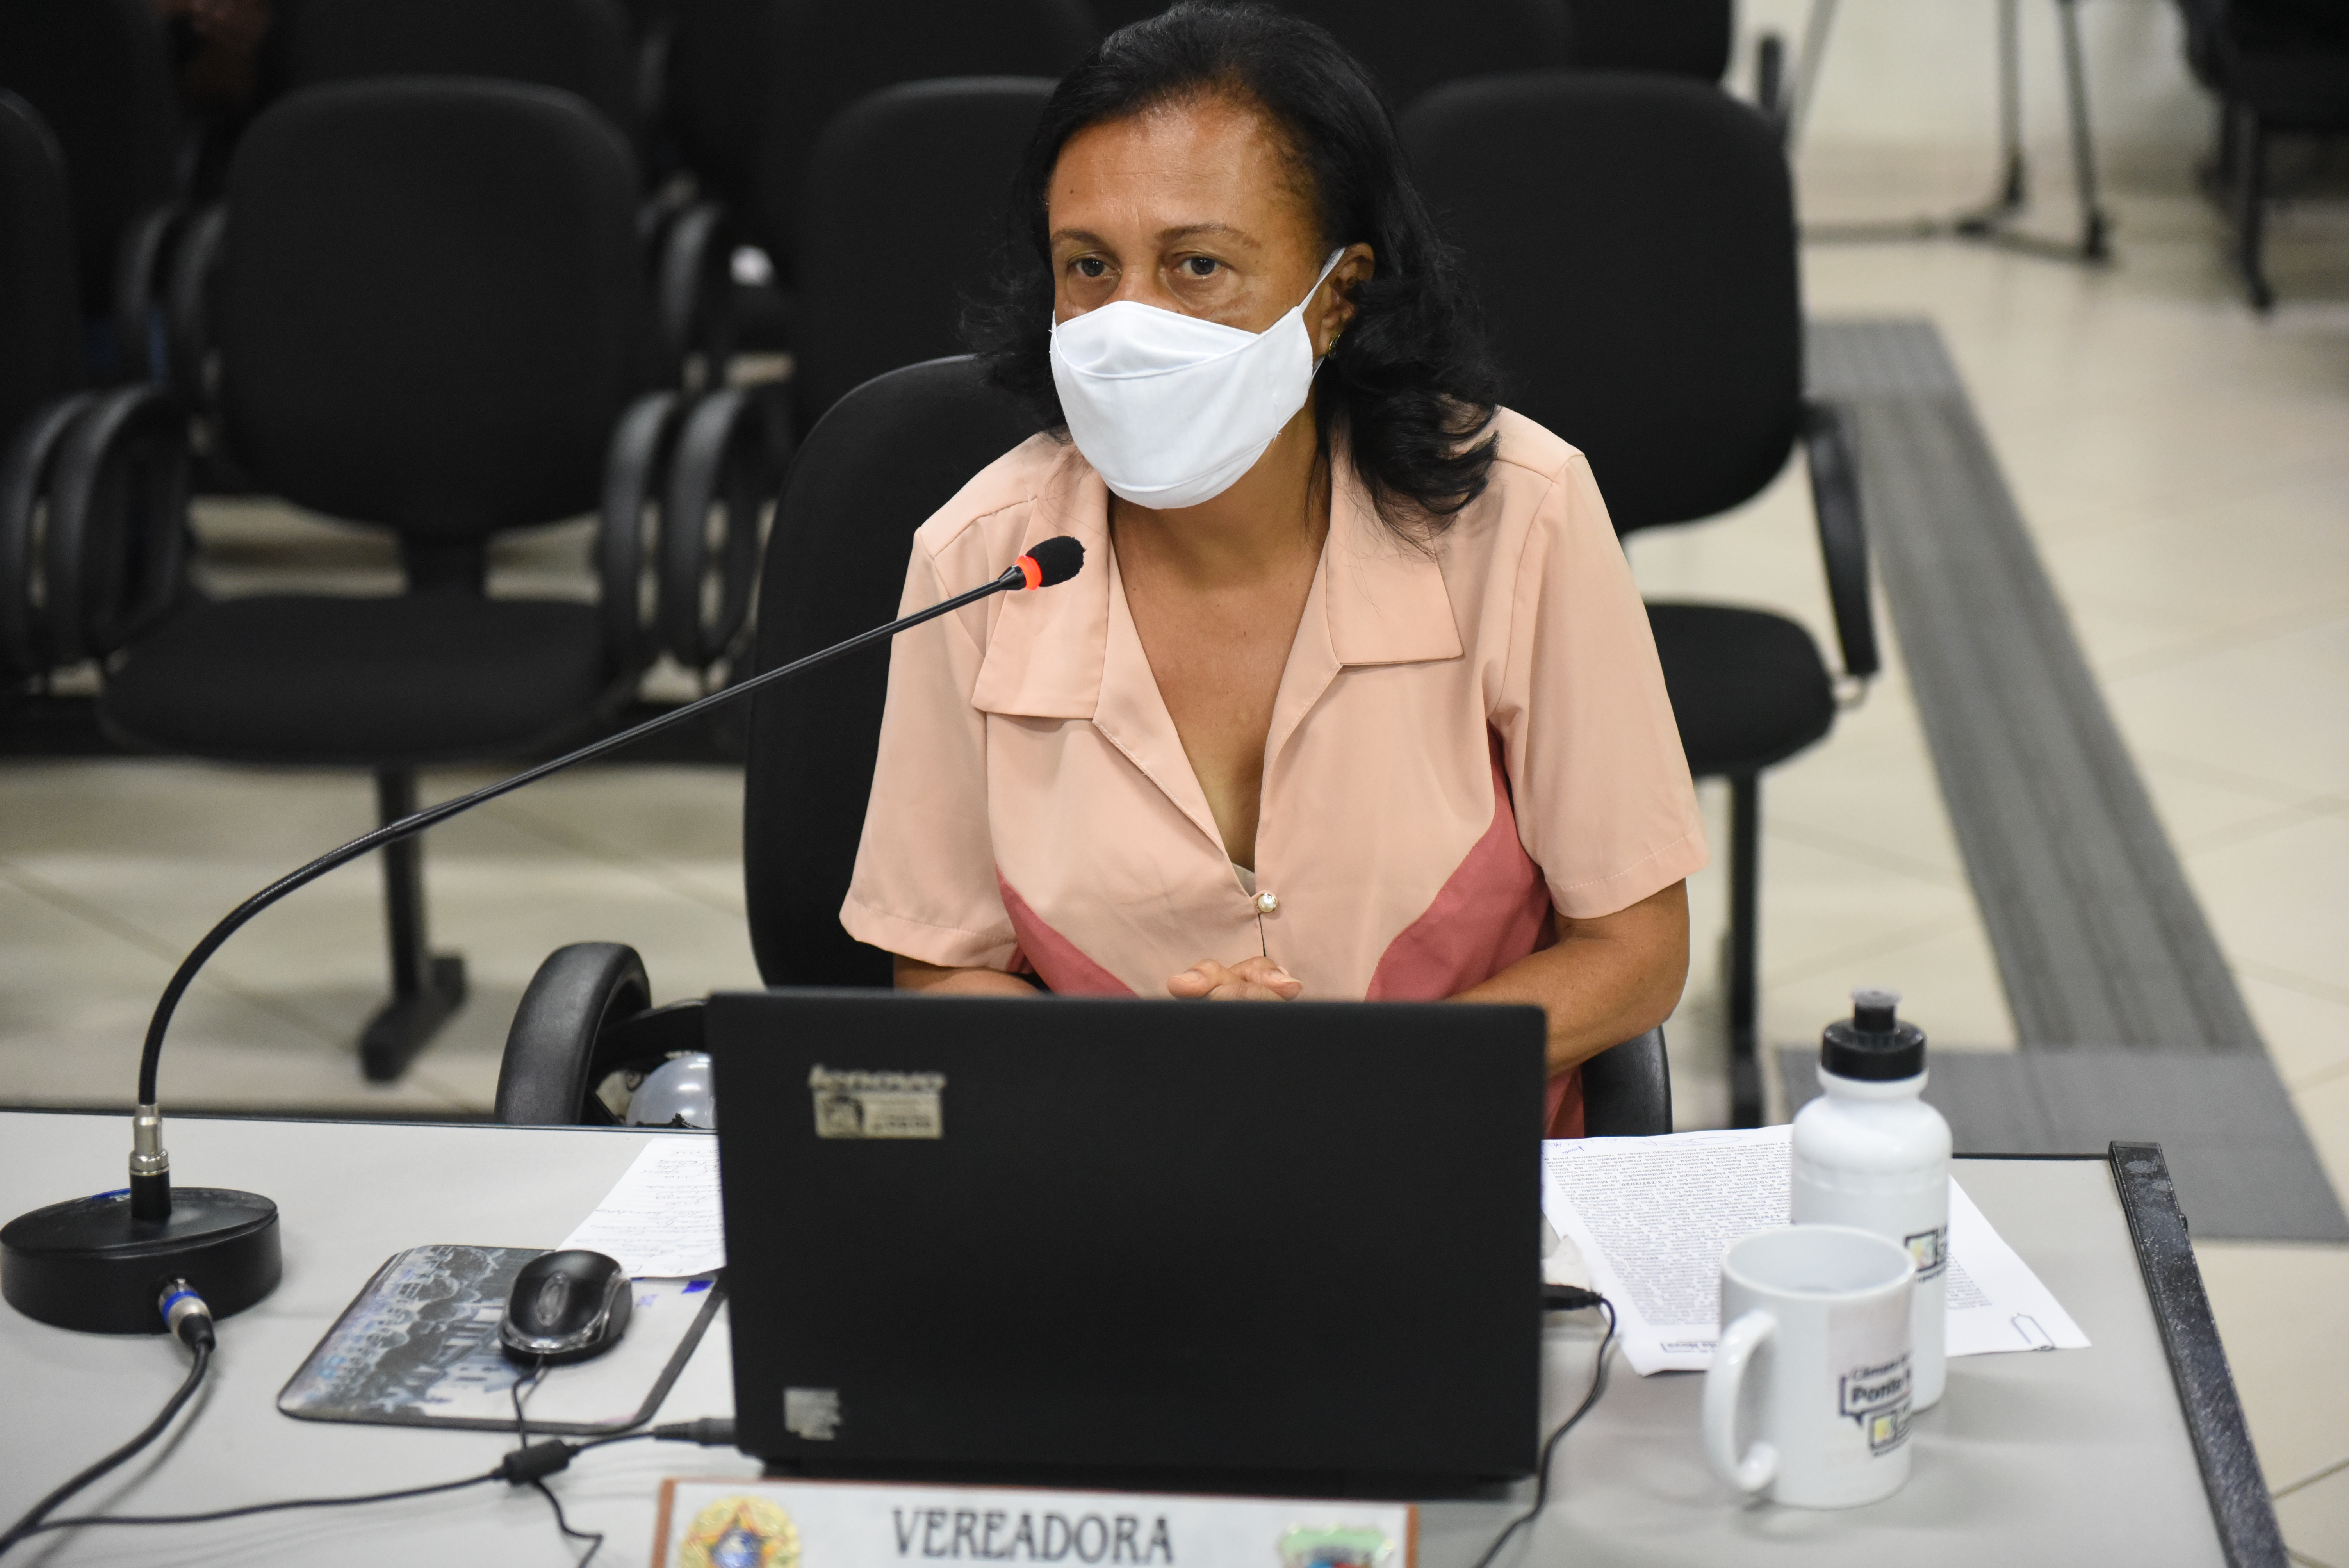 Vereadora Fiota faz apelo para a população se conscientizar sobre a pandemia